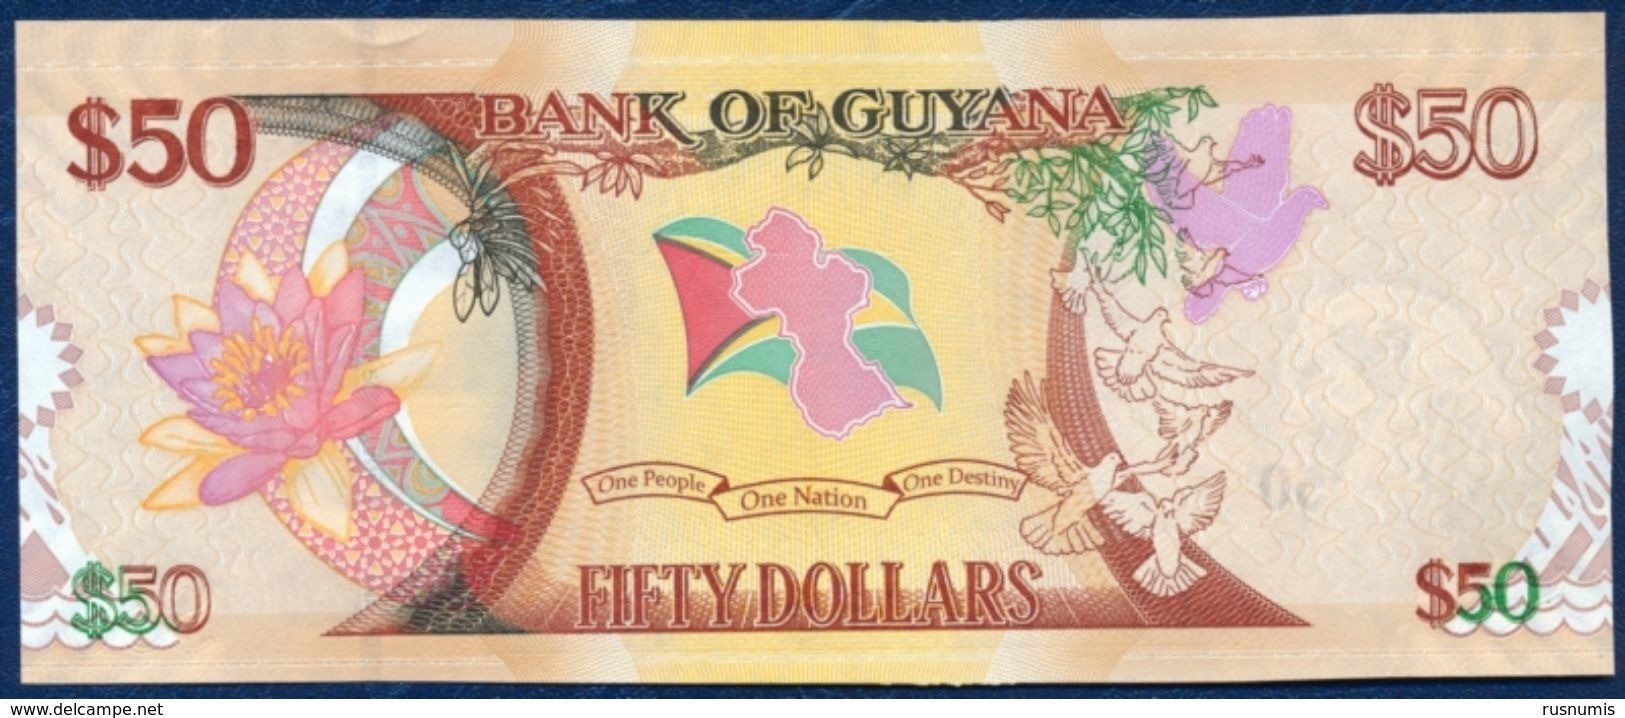 GUYANA 50 DOLLARS P-41 COMMEMORATIVE 50th ANNIVERSARY OF INDEPENDANCE 2016 UNC - Guyana